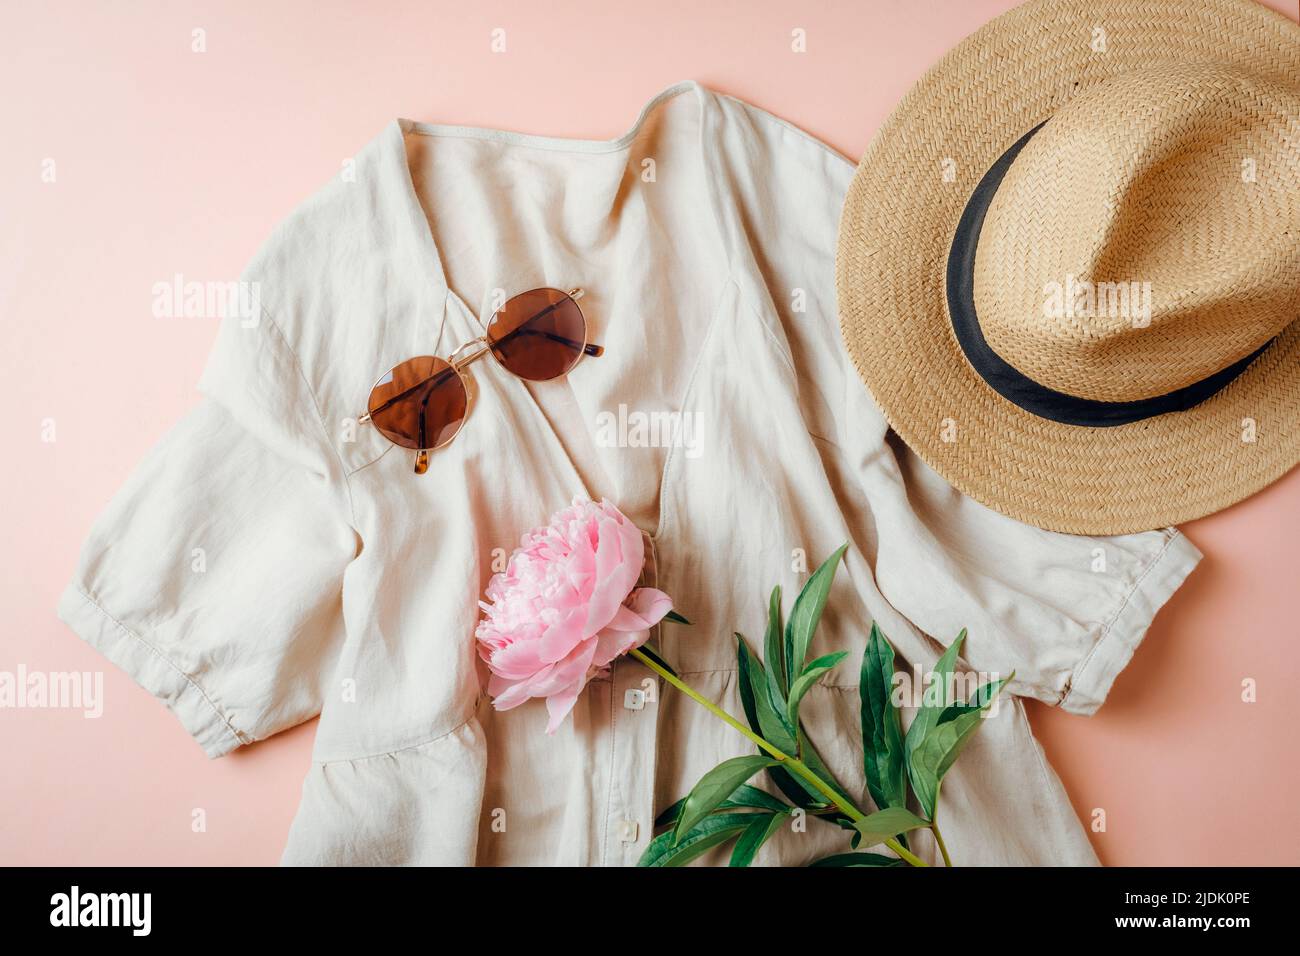 Sommerlicher Casual-Style. Stilvolle Frauenkleidung und Accessoires. Leinenkleid, Sonnenbrille, Hut und Pfingstrose auf rosa Hintergrund. Flach liegend, Draufsicht. Stockfoto